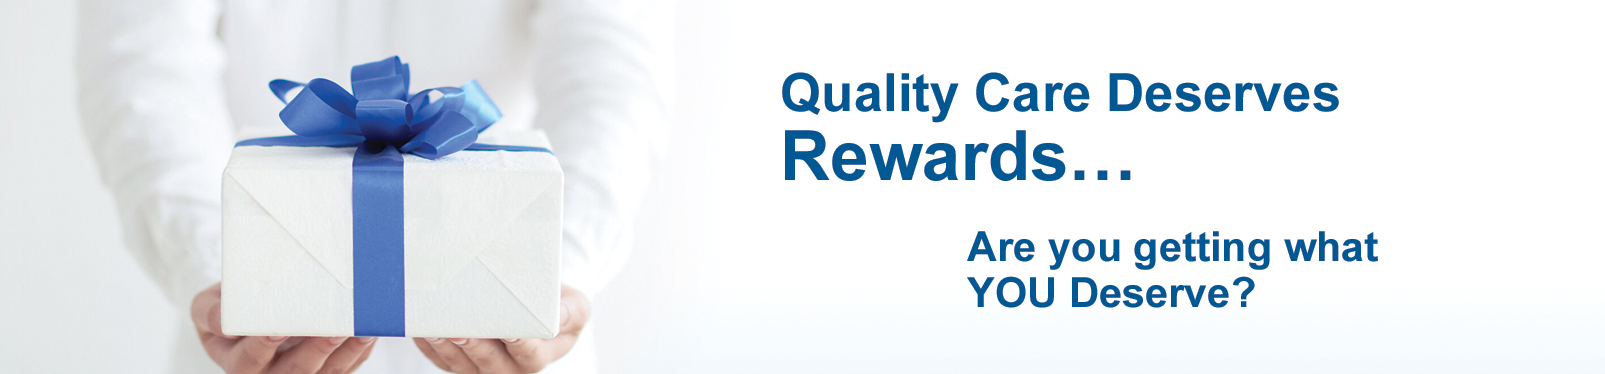 Quality Care Deserves Rewards